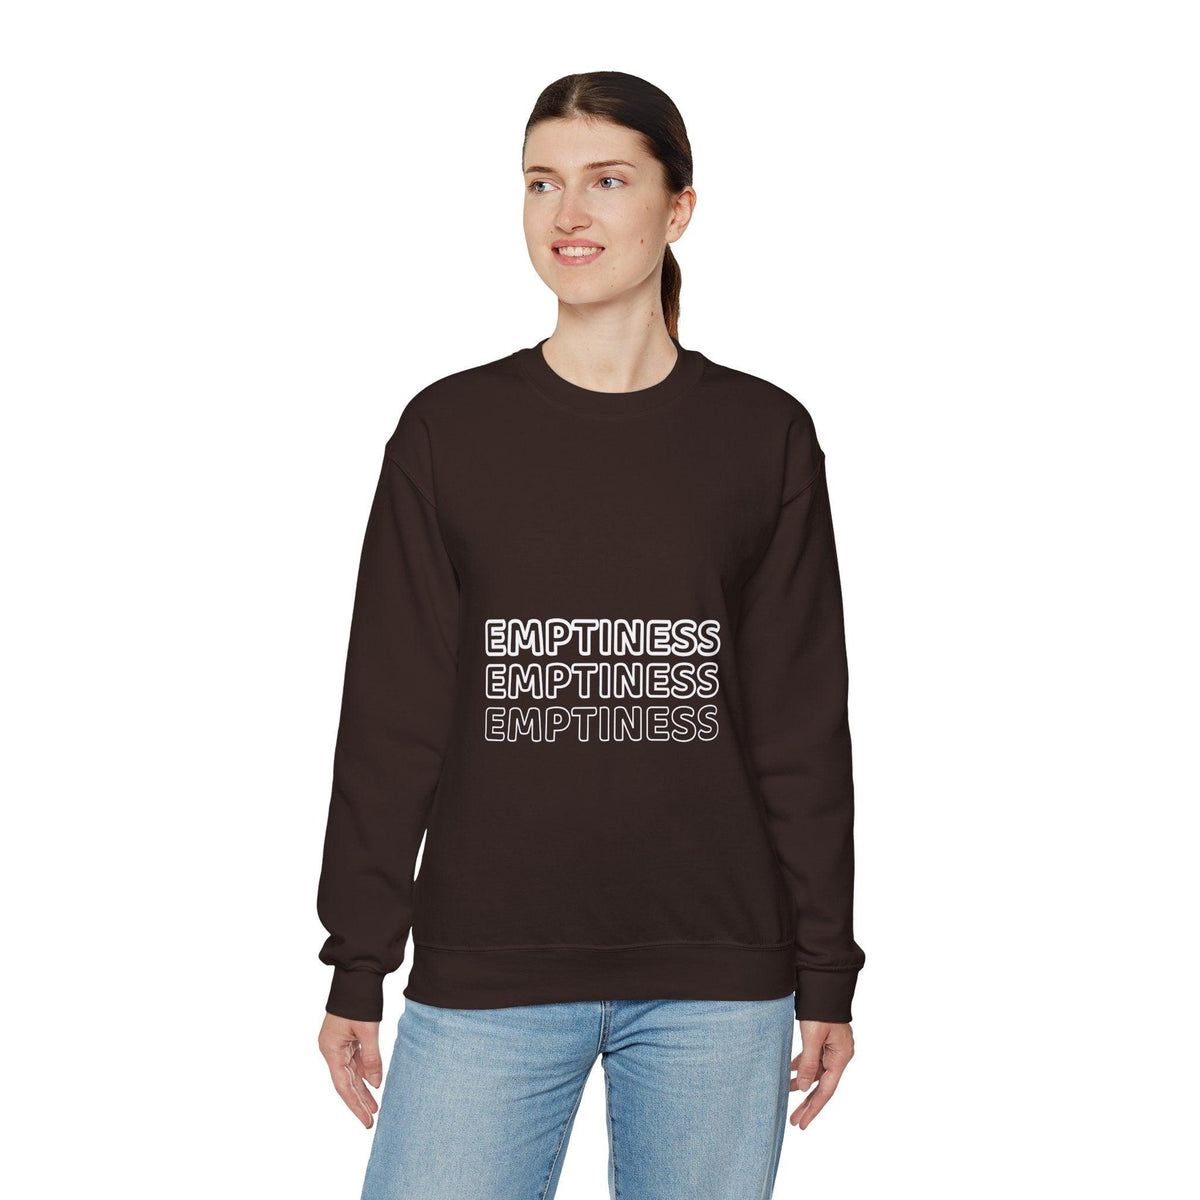 EMPTINESSS™ Crewneck Sweatshirt - Benty LTD